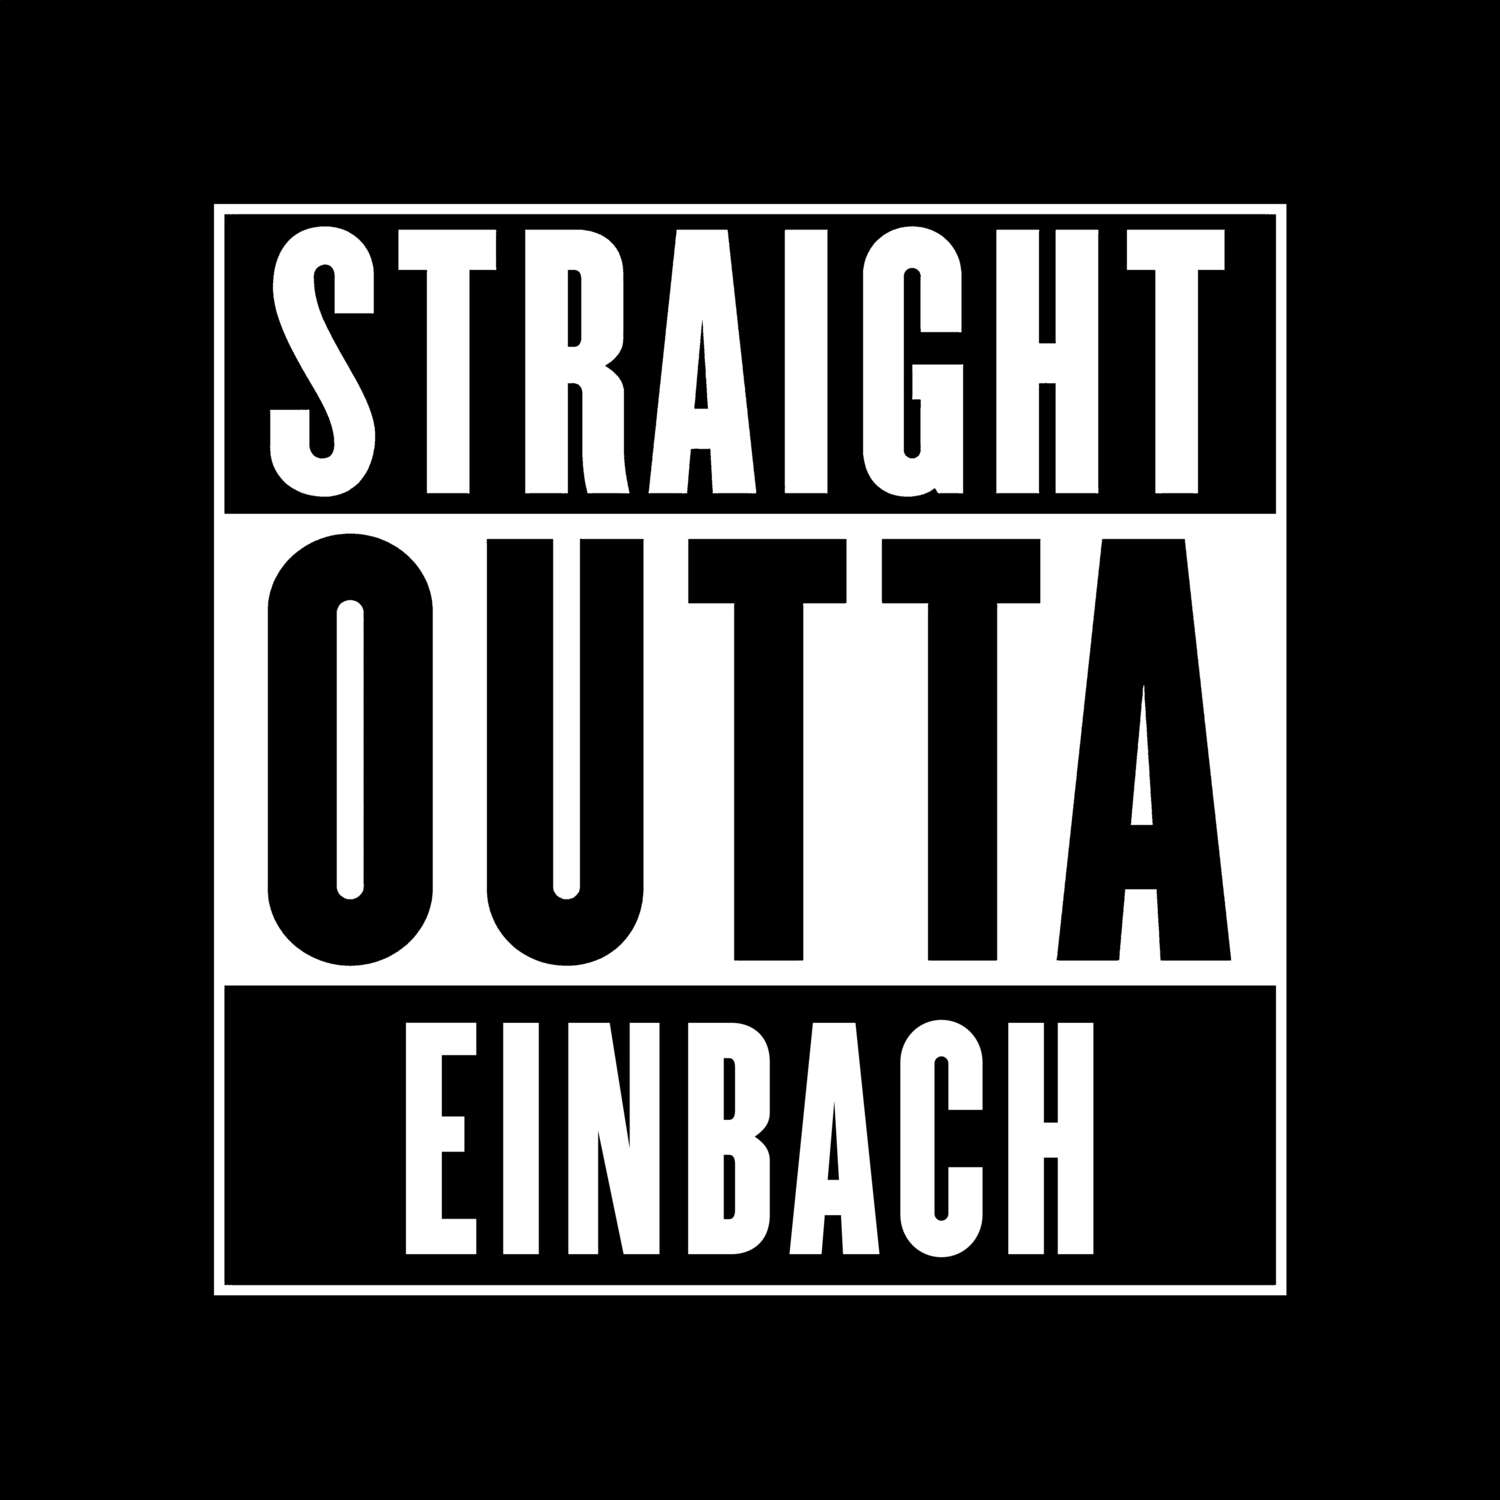 Einbach T-Shirt »Straight Outta«